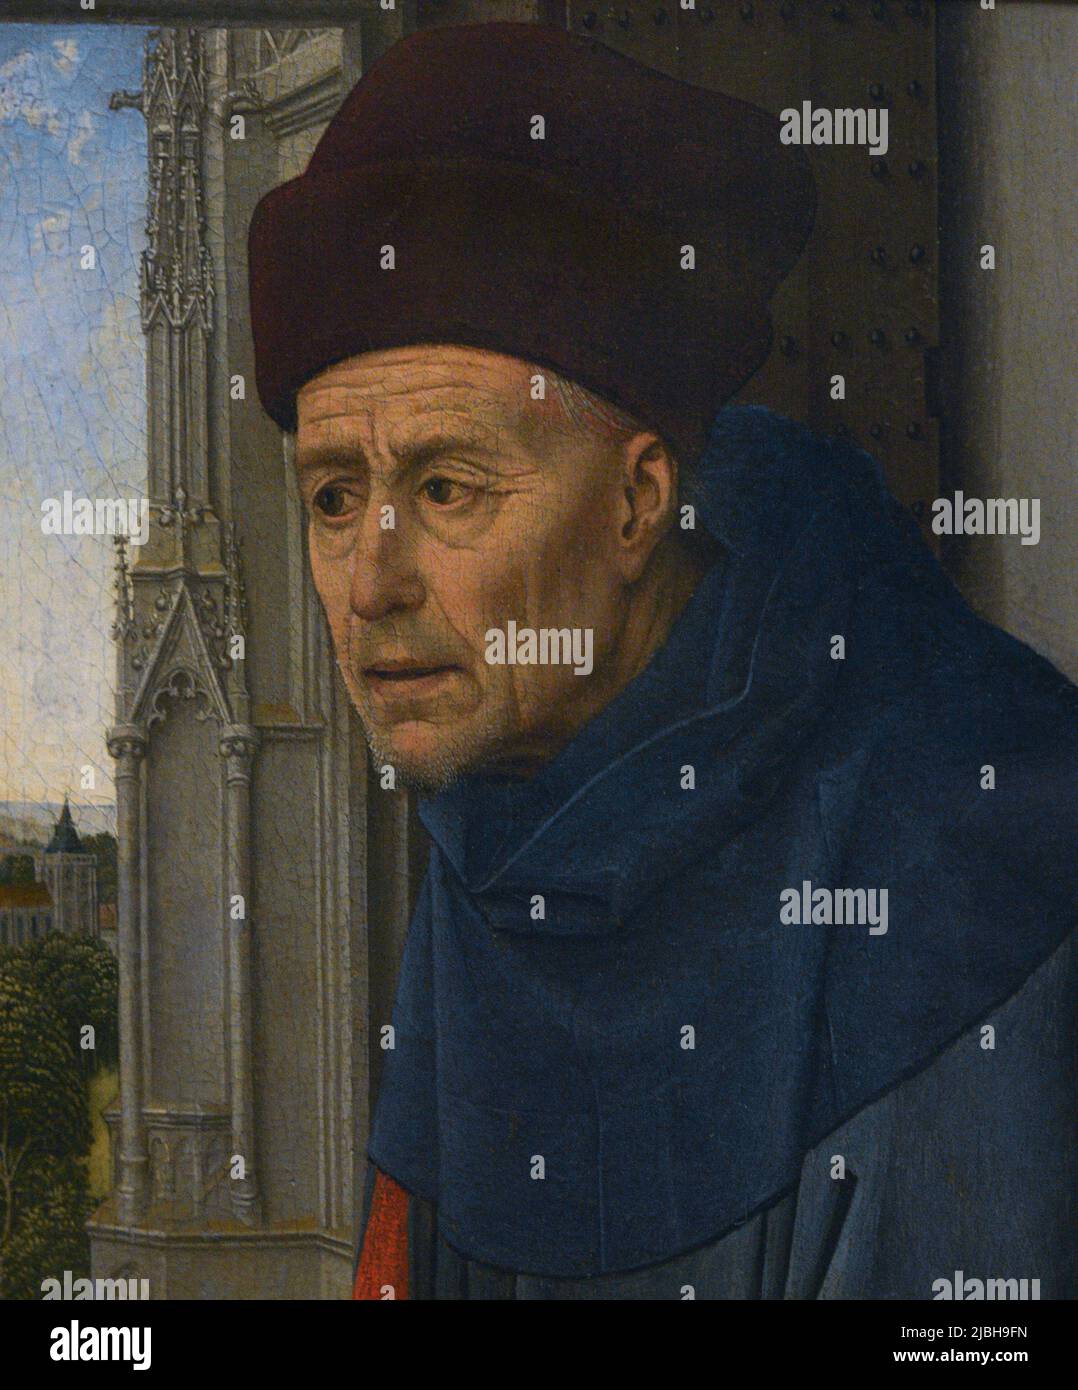 Rogier van der Weyden (1399-1464). Flämischer Maler. Büste des heiligen Josef, ca. 1435-1437. Tempera und Öl auf Holz. Calouste Gulbenkian Museum. Lissabon, Portugal. Stockfoto